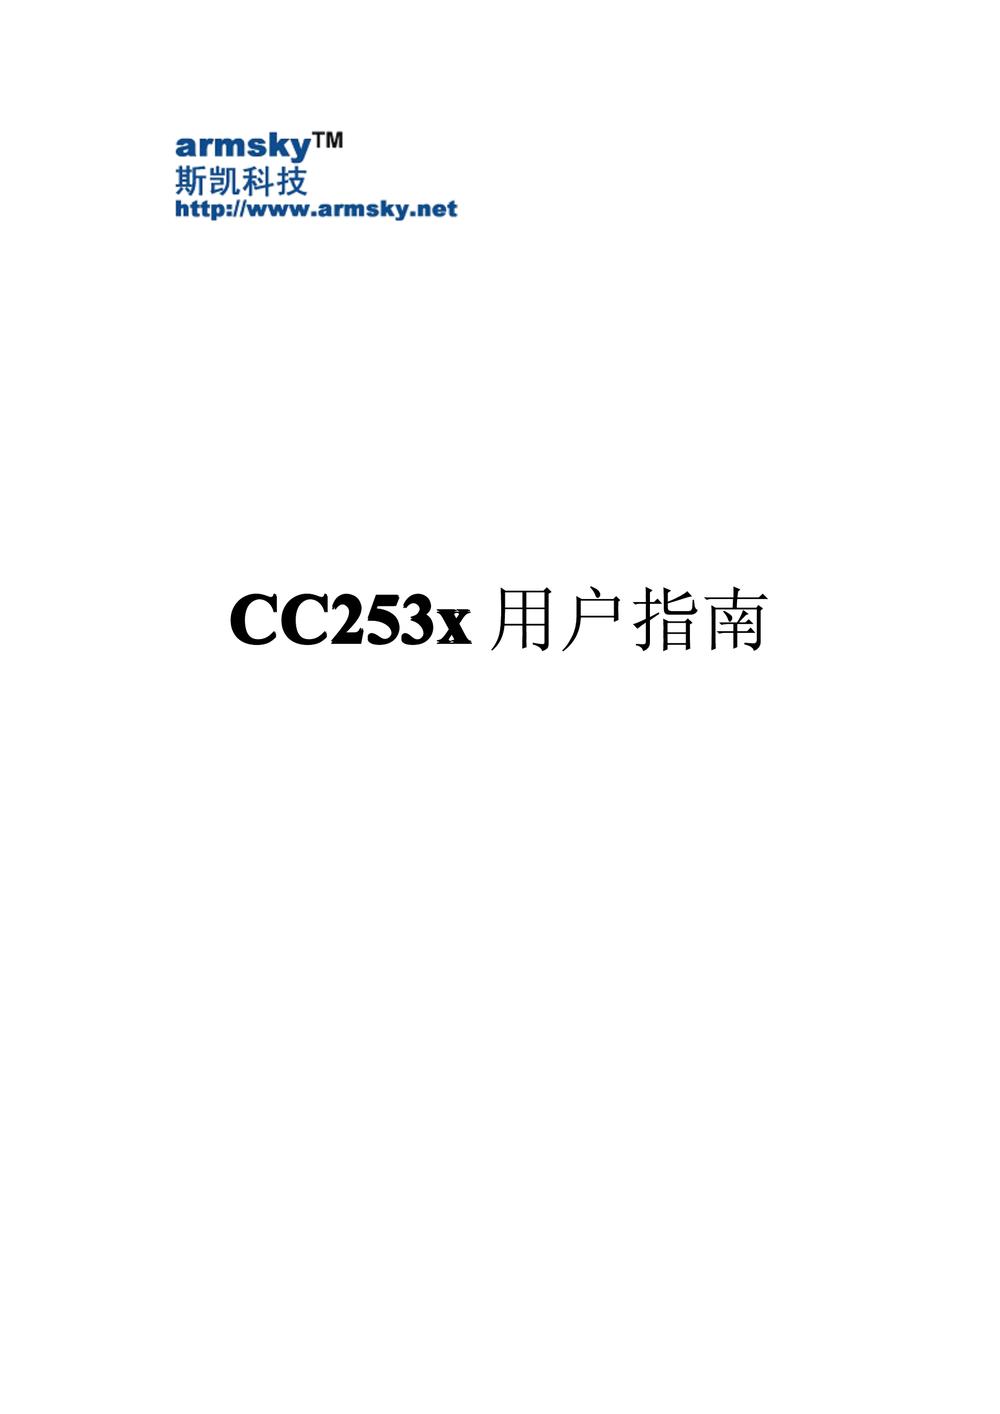 CC253x用户指南(中文).pdf-第1页.png